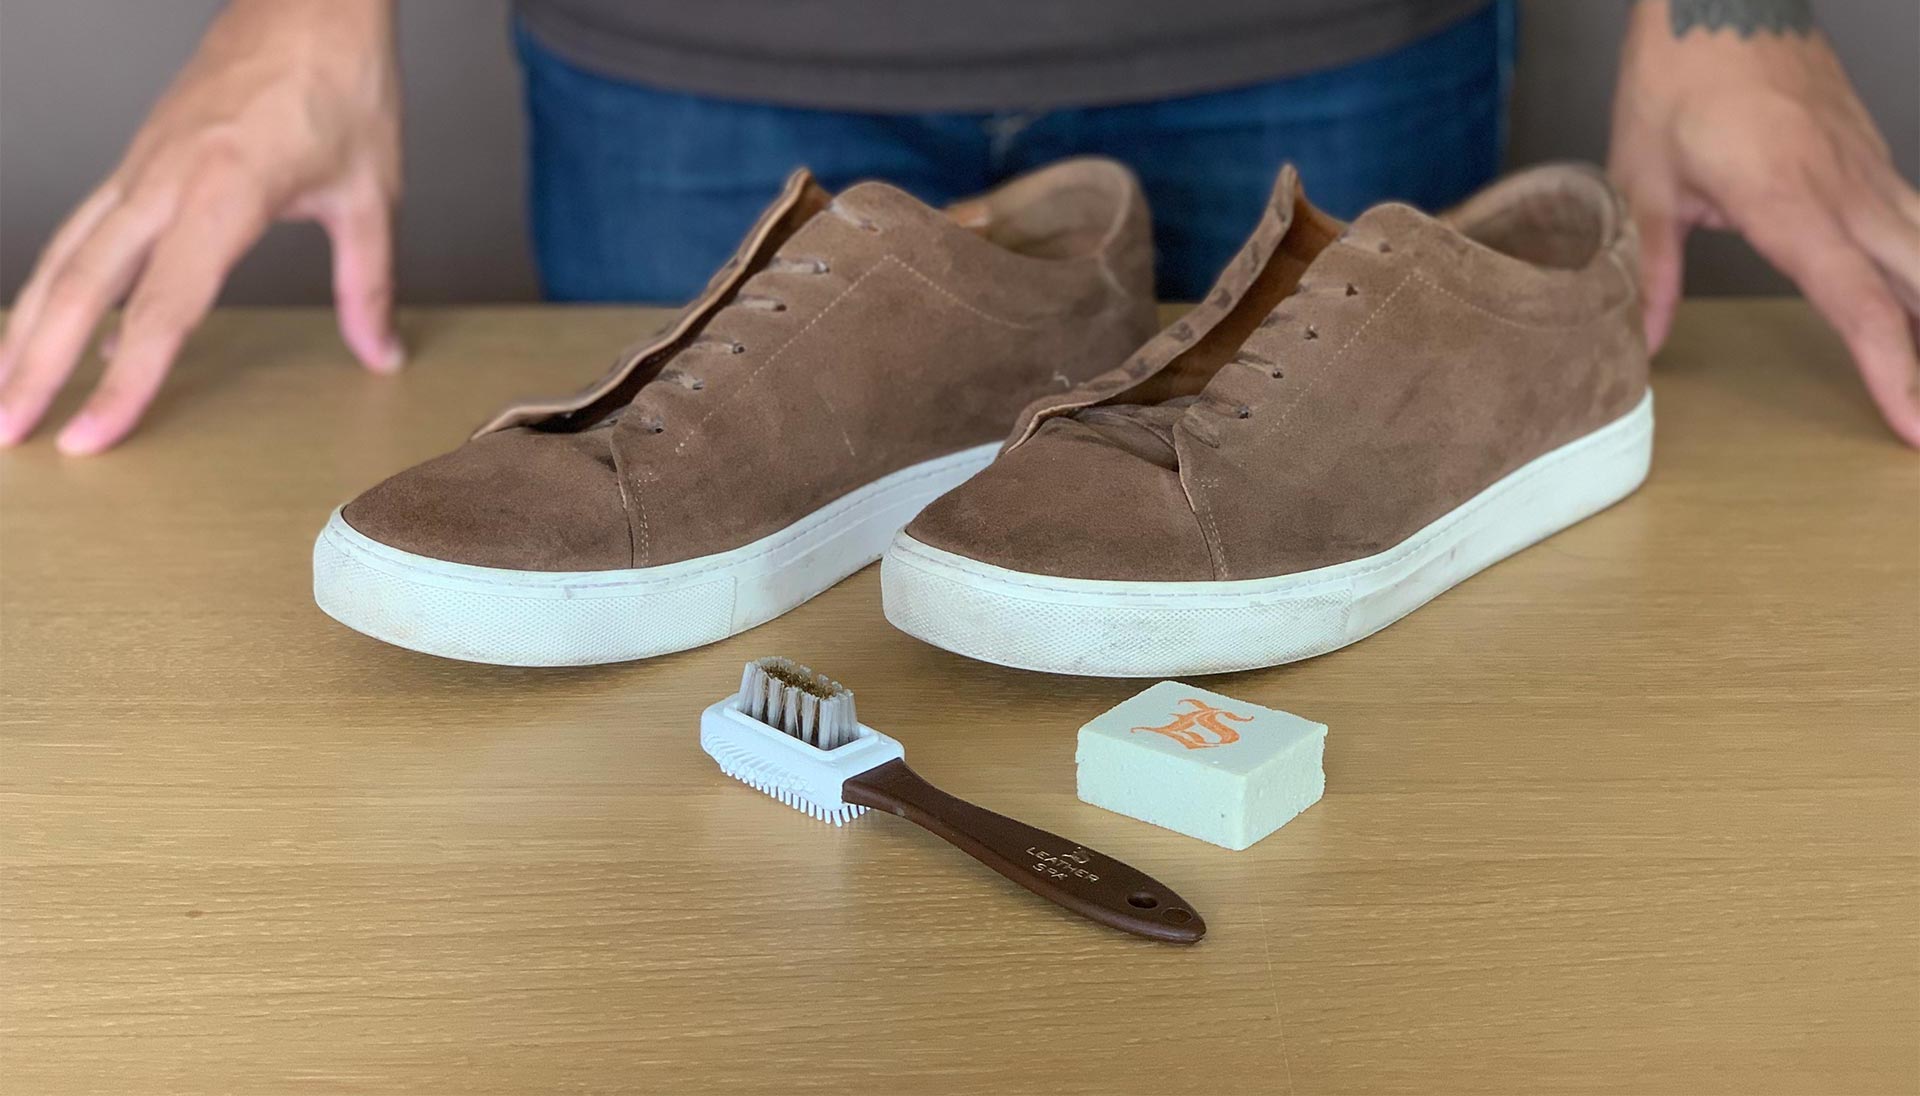 Comment nettoyer des chaussures en daim ou nubuck